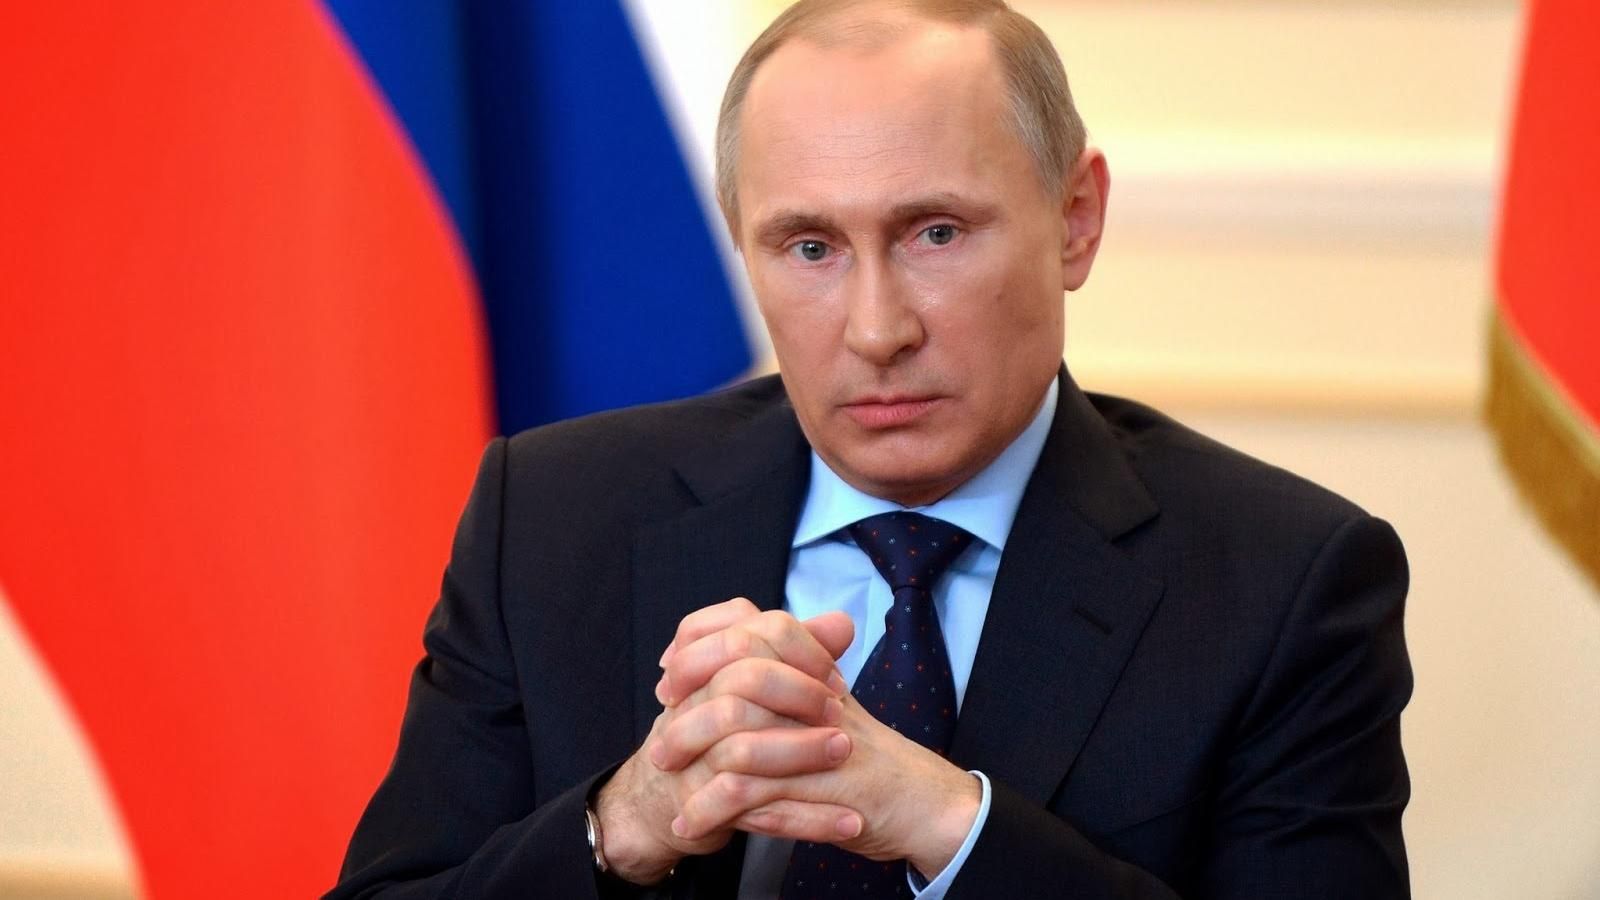 Путин может пойти на обострение на Донбассе, чтобы достичь политических целей, - оппозиционер